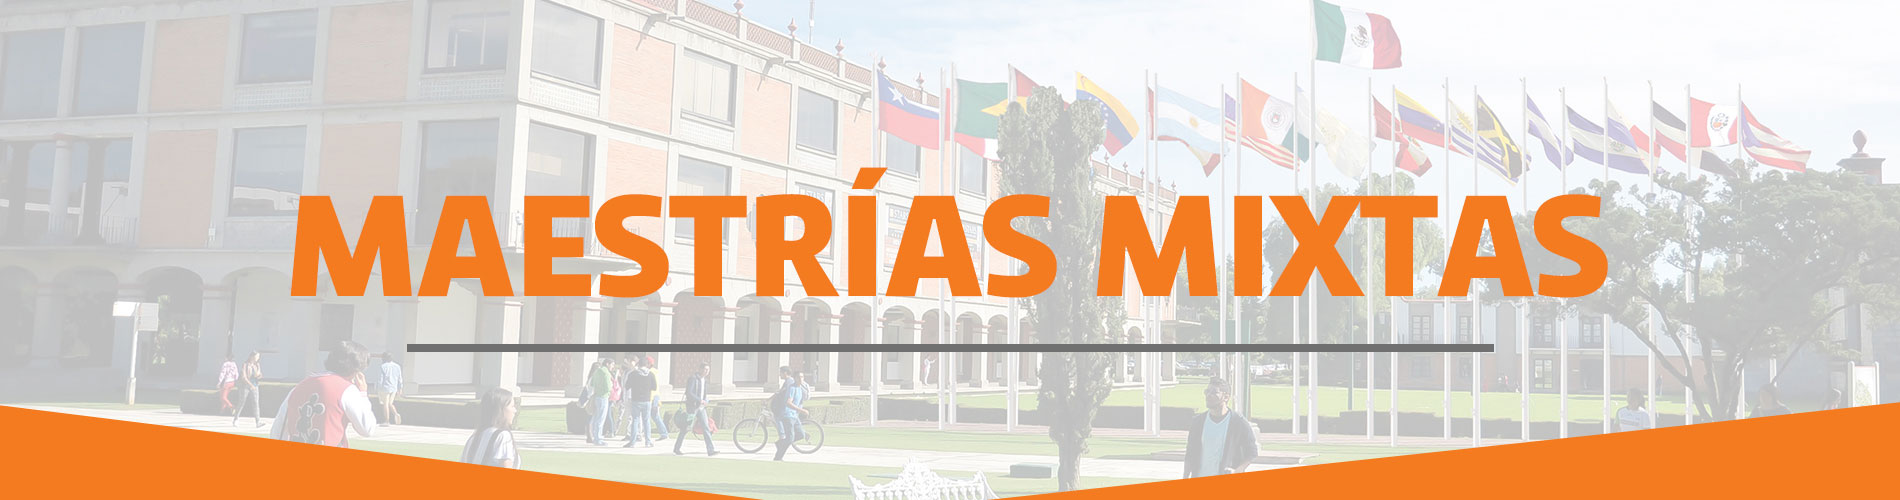 Universidad de las Américas Puebla